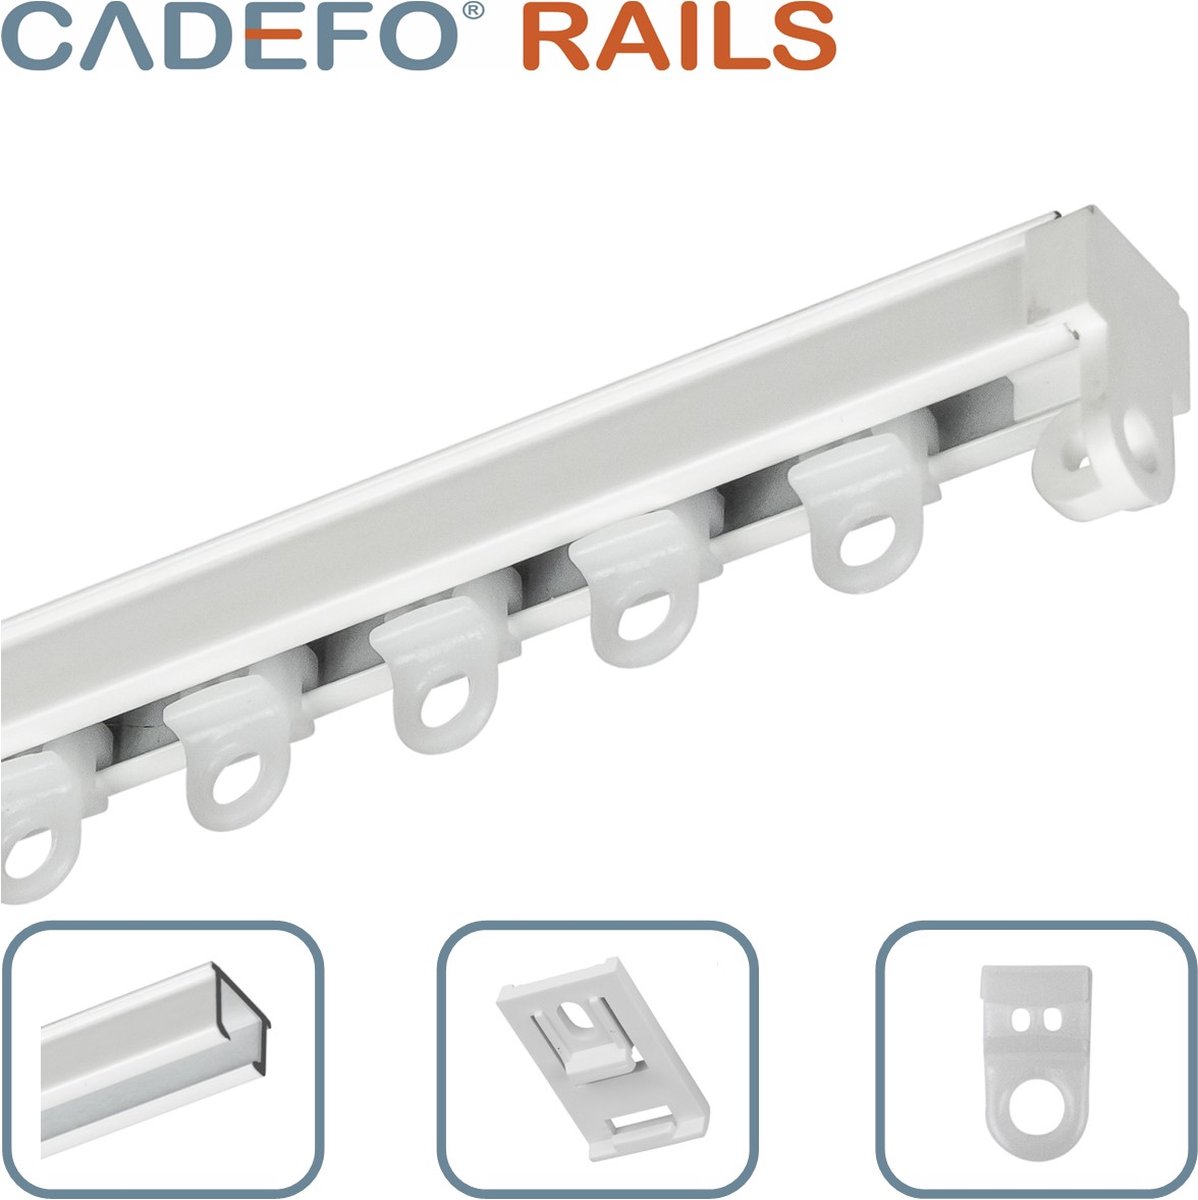 CADEFO RAILS (151 - 200 cm) Gordijnrails - Compleet op maat! - UIT 1 STUK - Leverbaar tot 6 meter - Plafondbevestiging - Lengte 169 cm